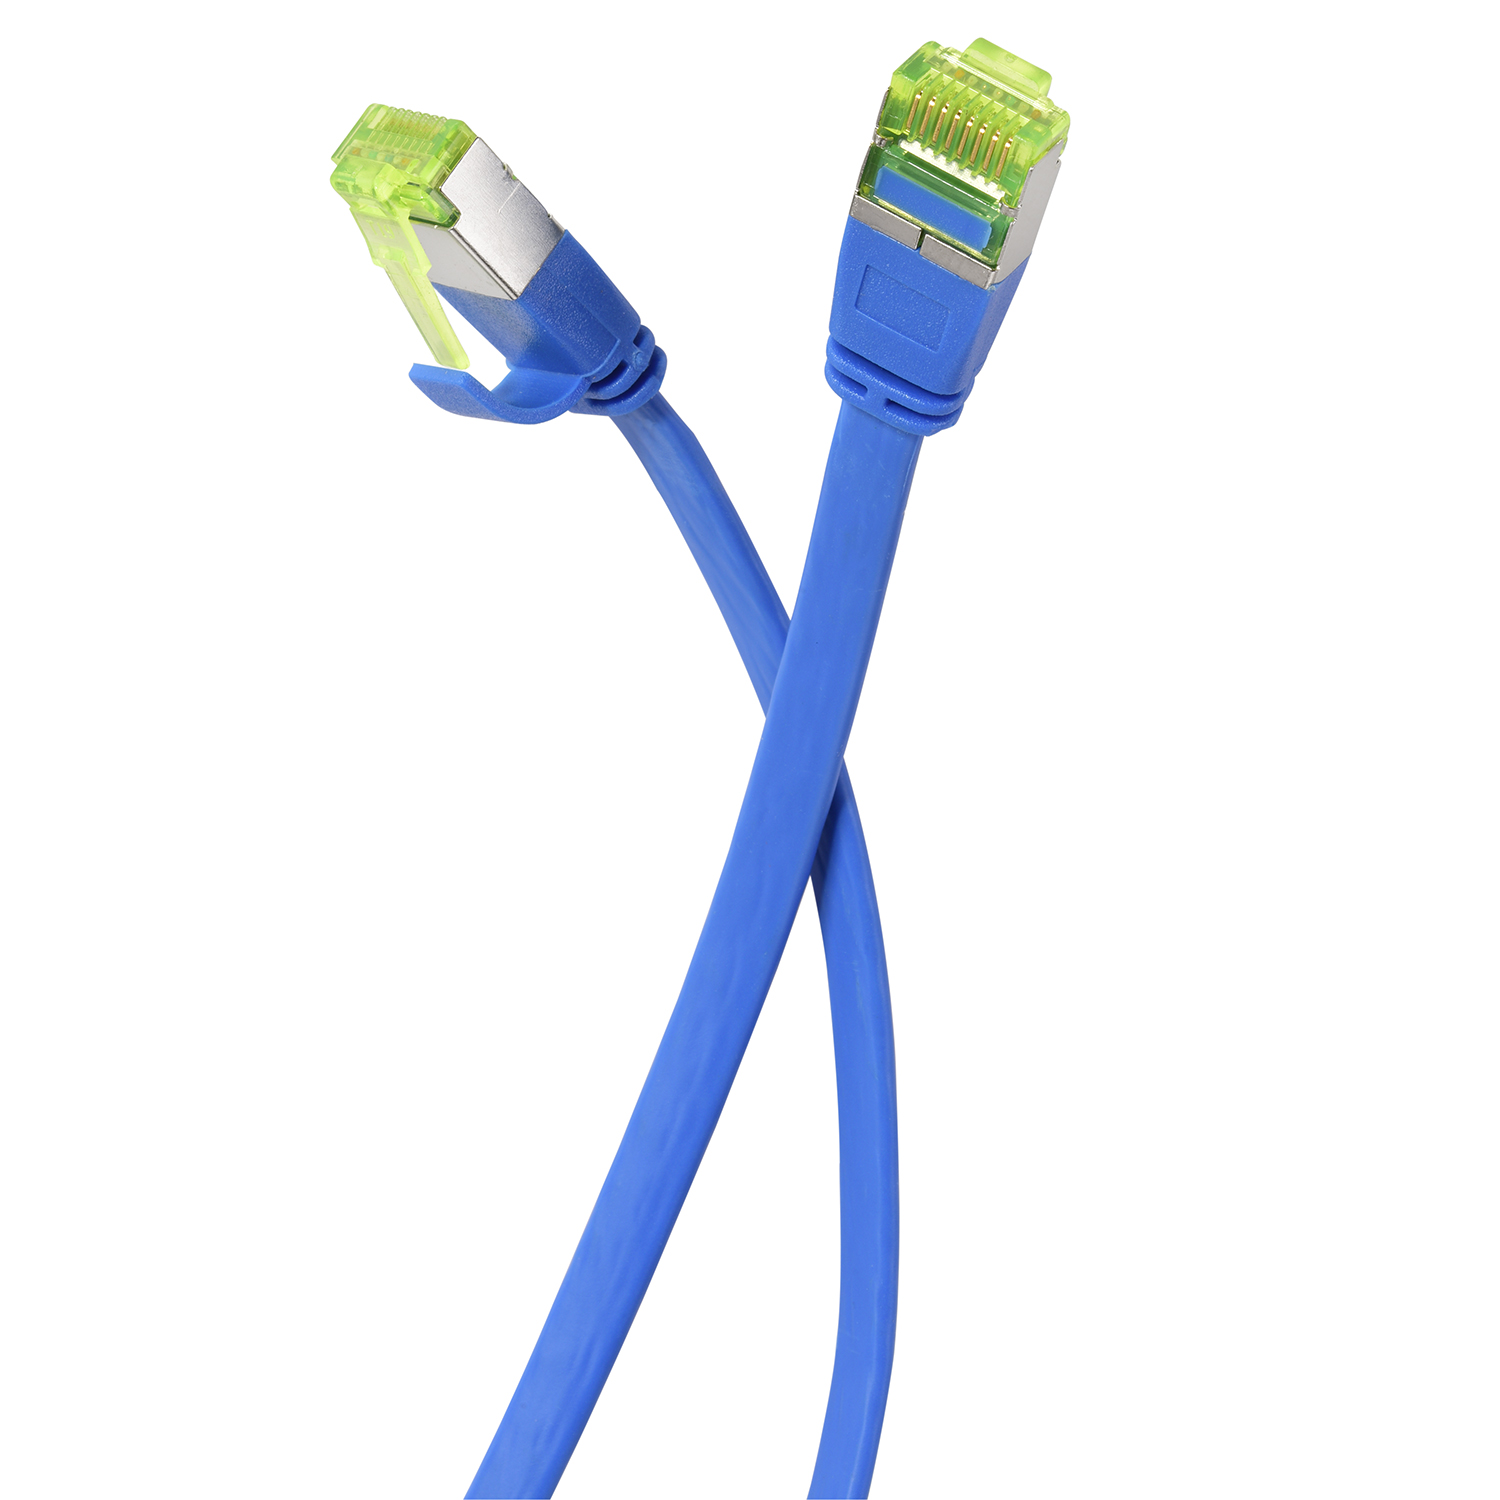 10 Pack 0,50m 0,5 Patchkabel blau, 10er / GBit, m Flachkabel Netzwerkkabel, U/FTP TPFNET